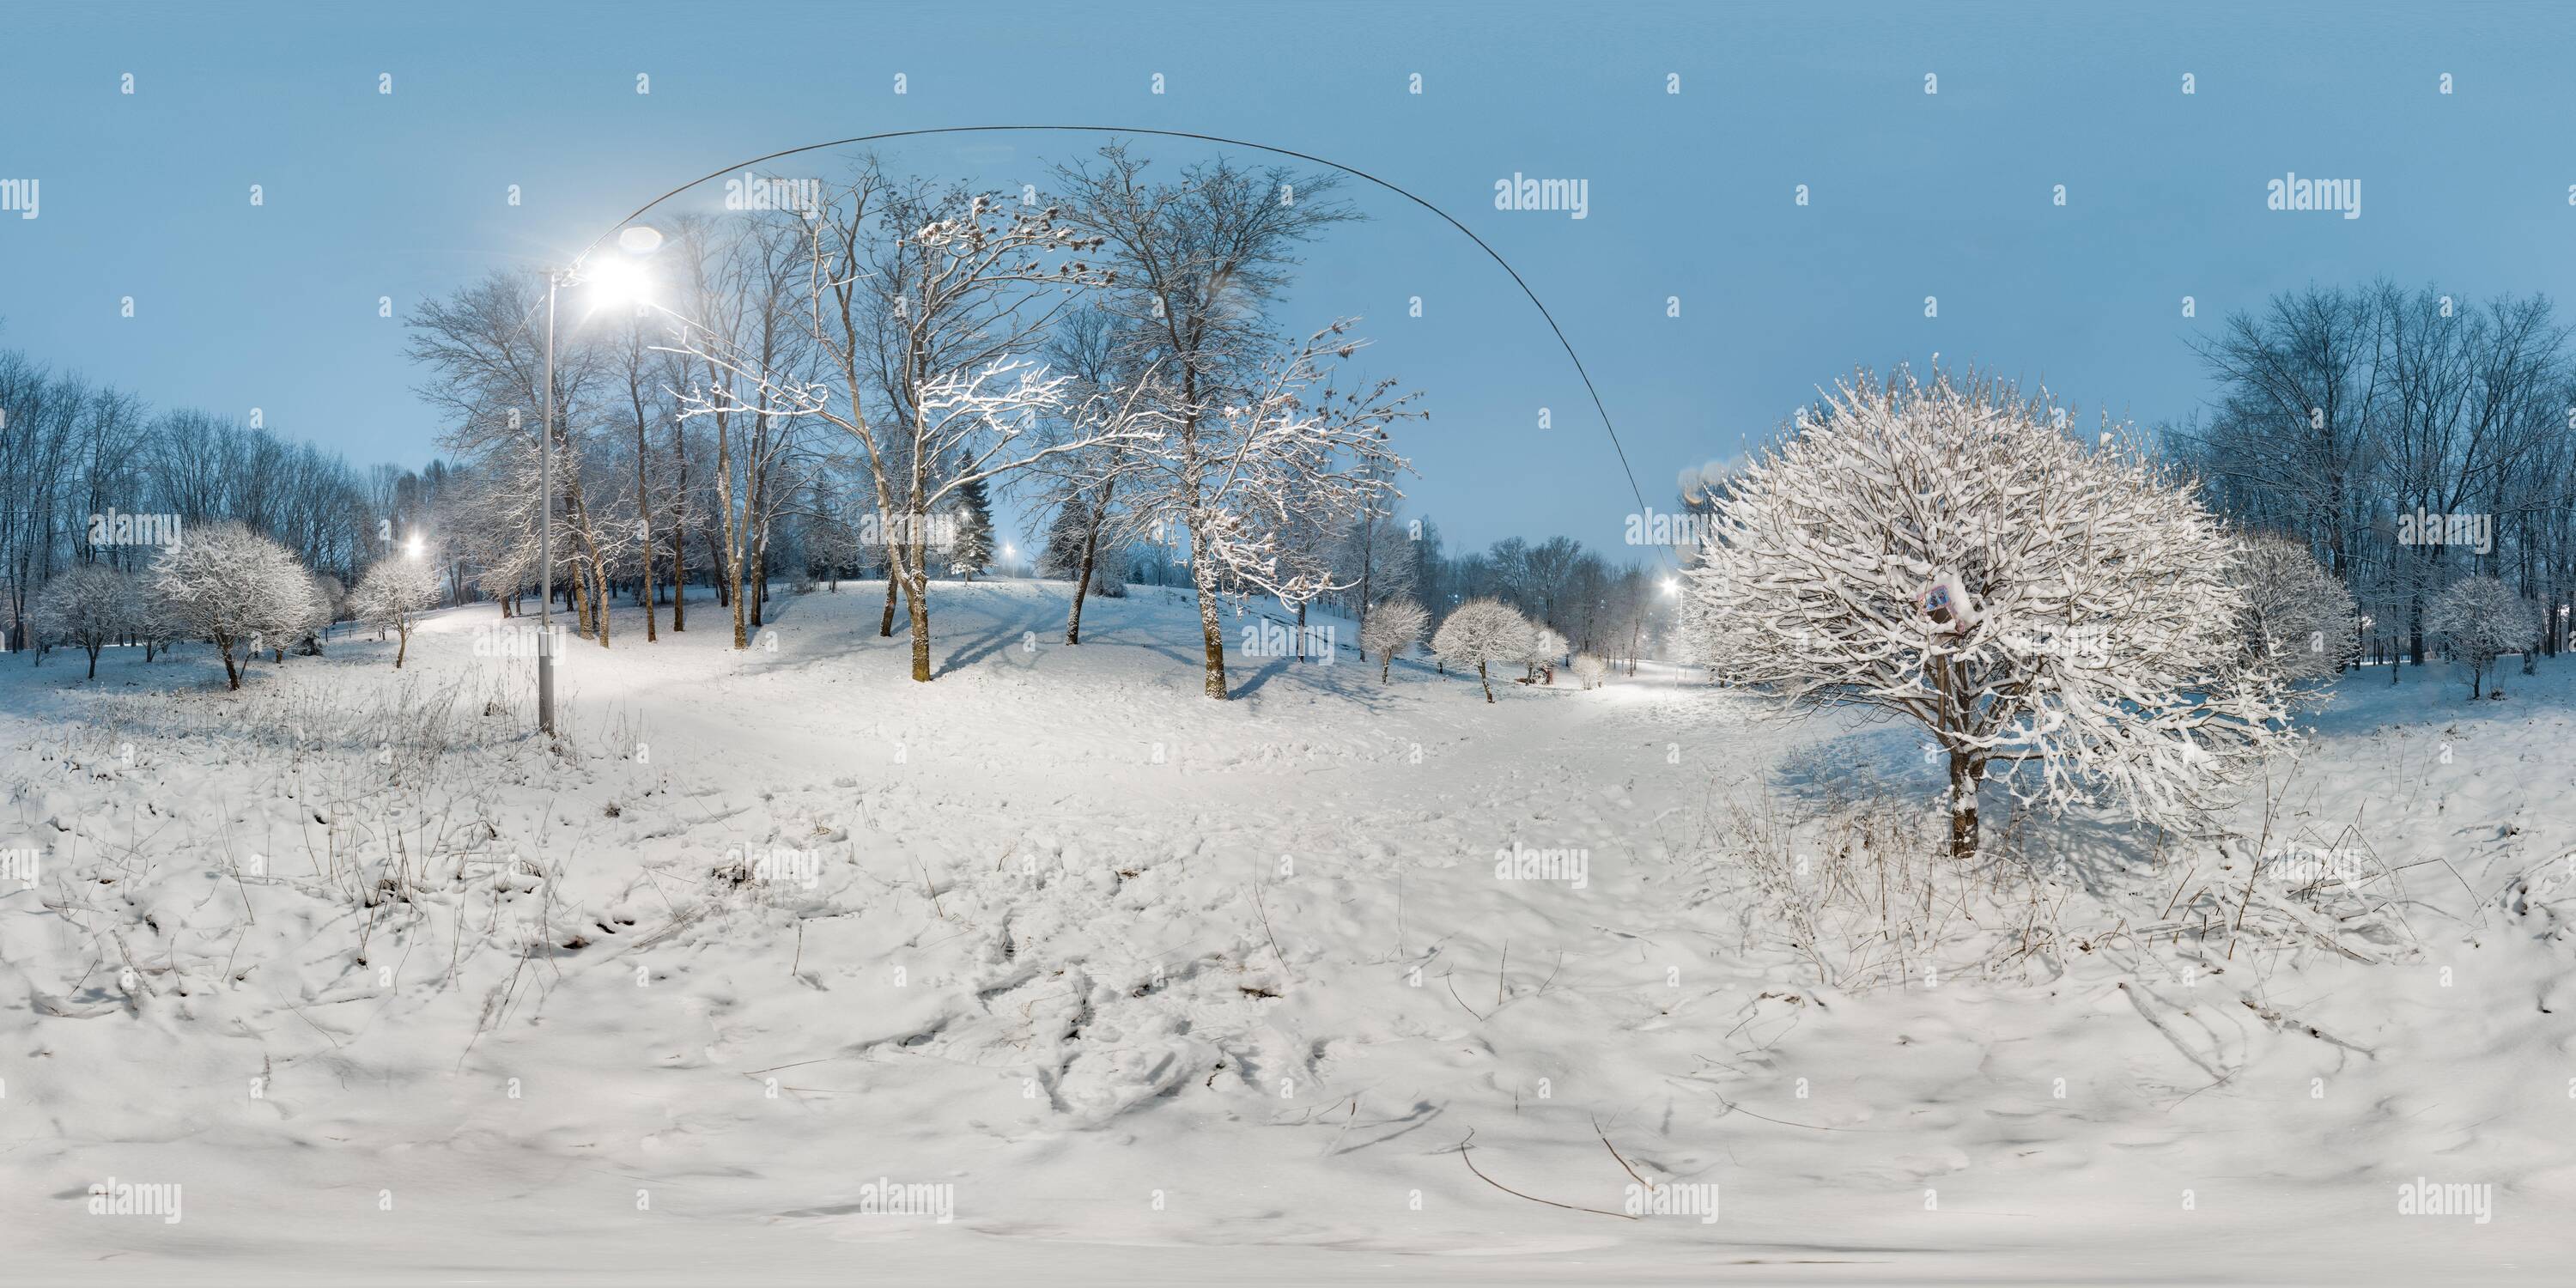 Vue panoramique à 360° de Image avec panorama sphérique en 3 dimensions avec angle de vue de 360 degrés. Hiver enneigé dans le parc avec arbres le soir. Lanternes brûlantes. Entièrement équirectangulaire